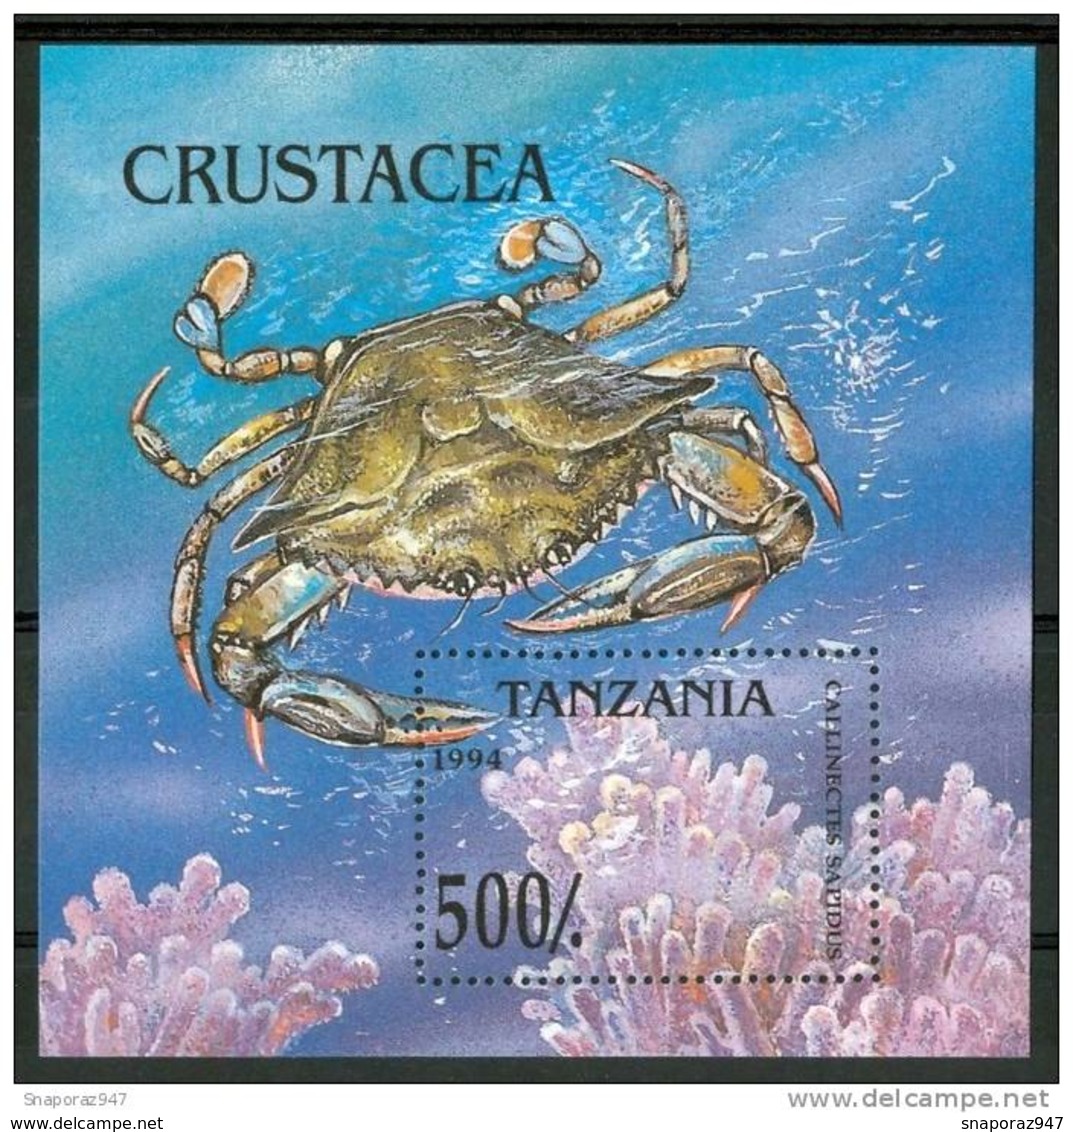 1994 Tanzania Crostacei Crustaceans Crustacès Set MNH** Po103 - Crostacei